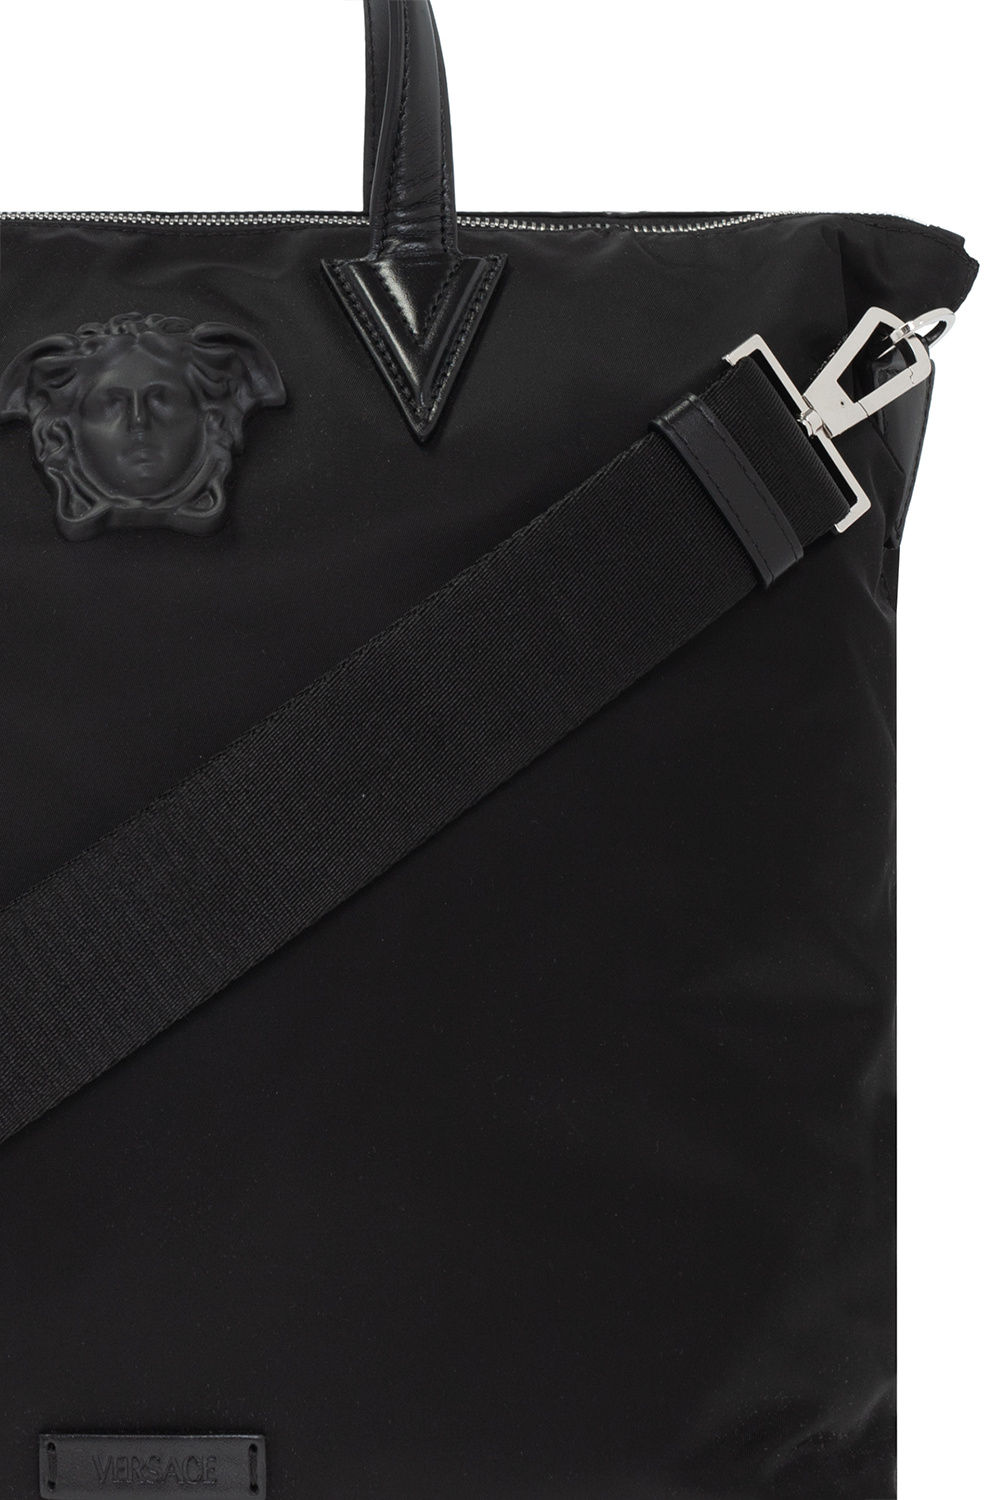 Versace Medusa head shoulder Comma bag